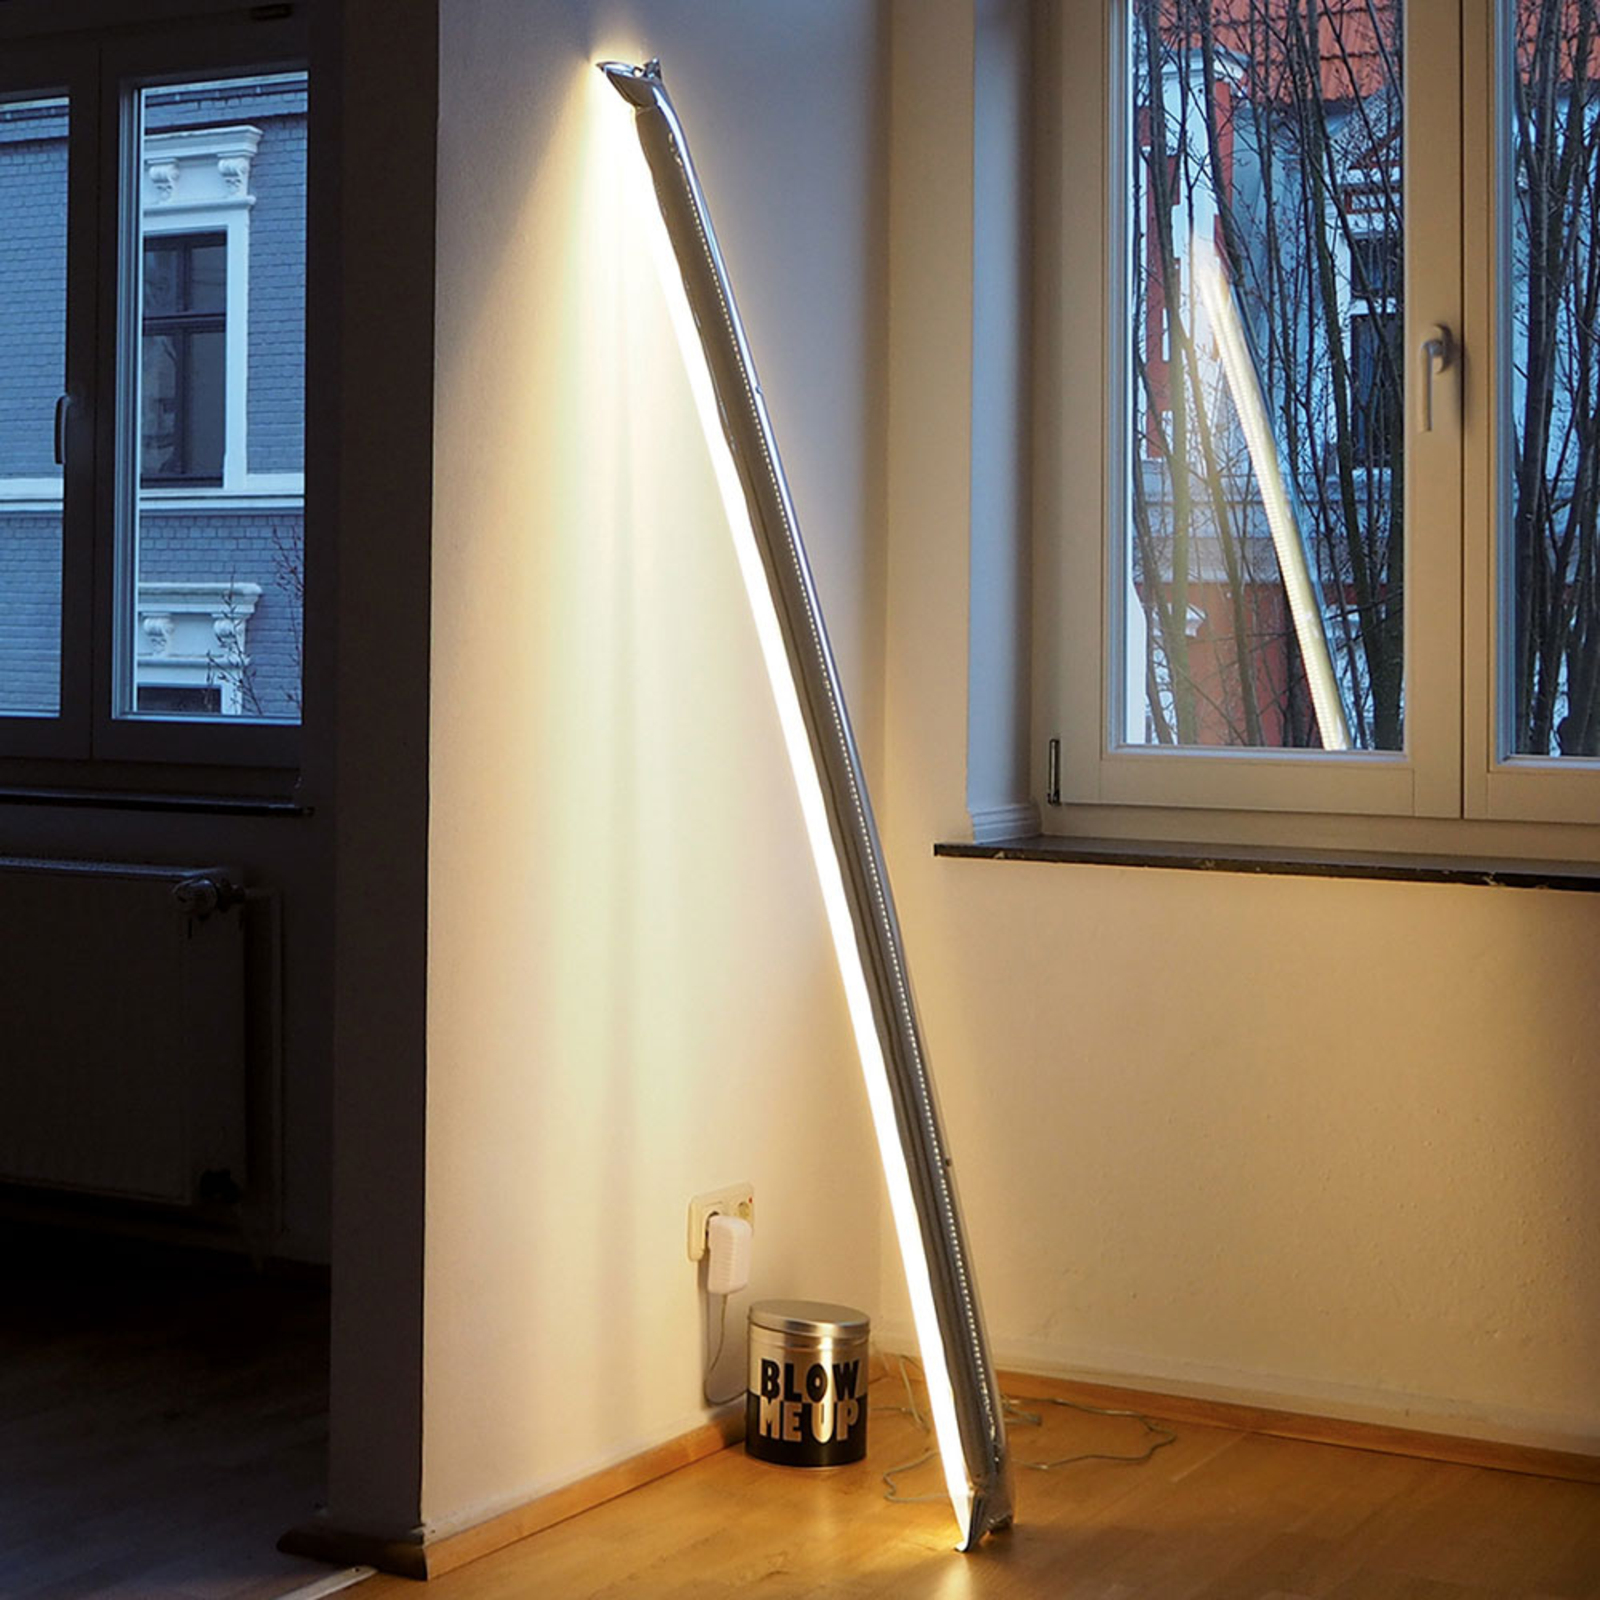 Ingo Maurer Blow Me Up LED-gulvlampe 120cm sølv